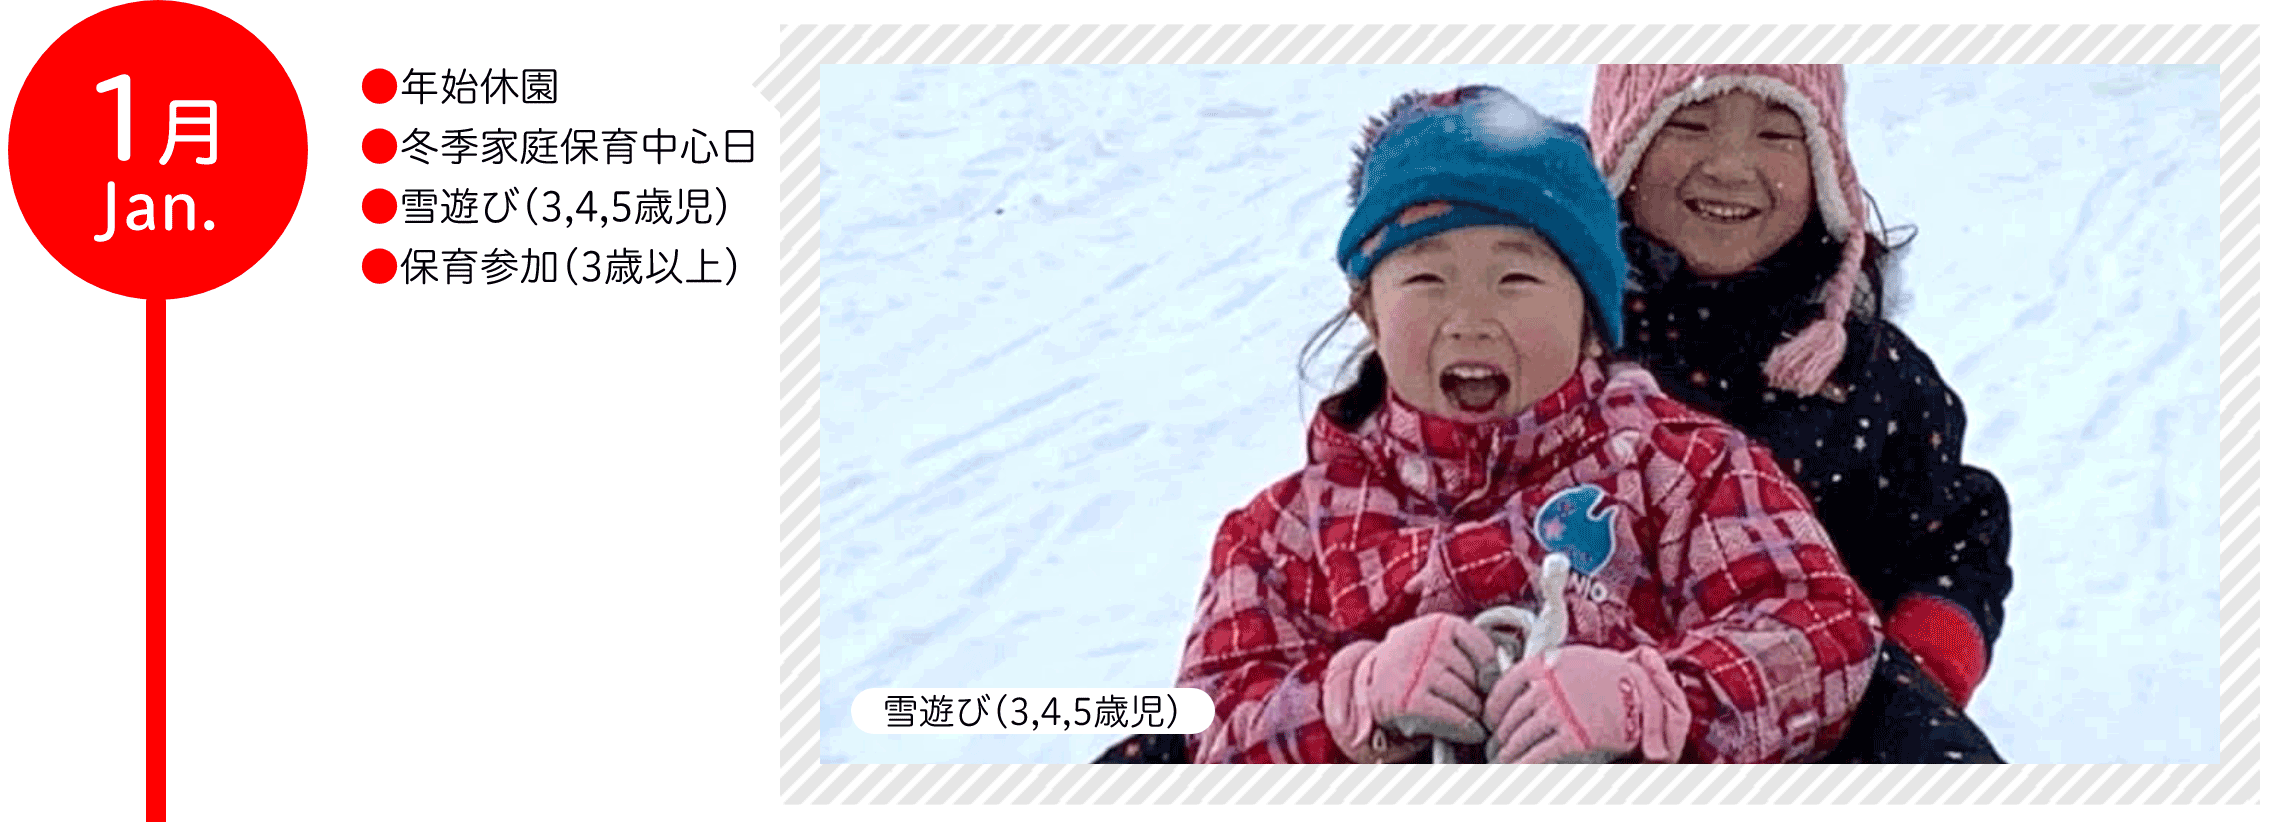 1月 ●年始休園 ●冬季家庭保育中心日 ●雪遊び（3,4,5歳児） ●保育参加（3歳以上）